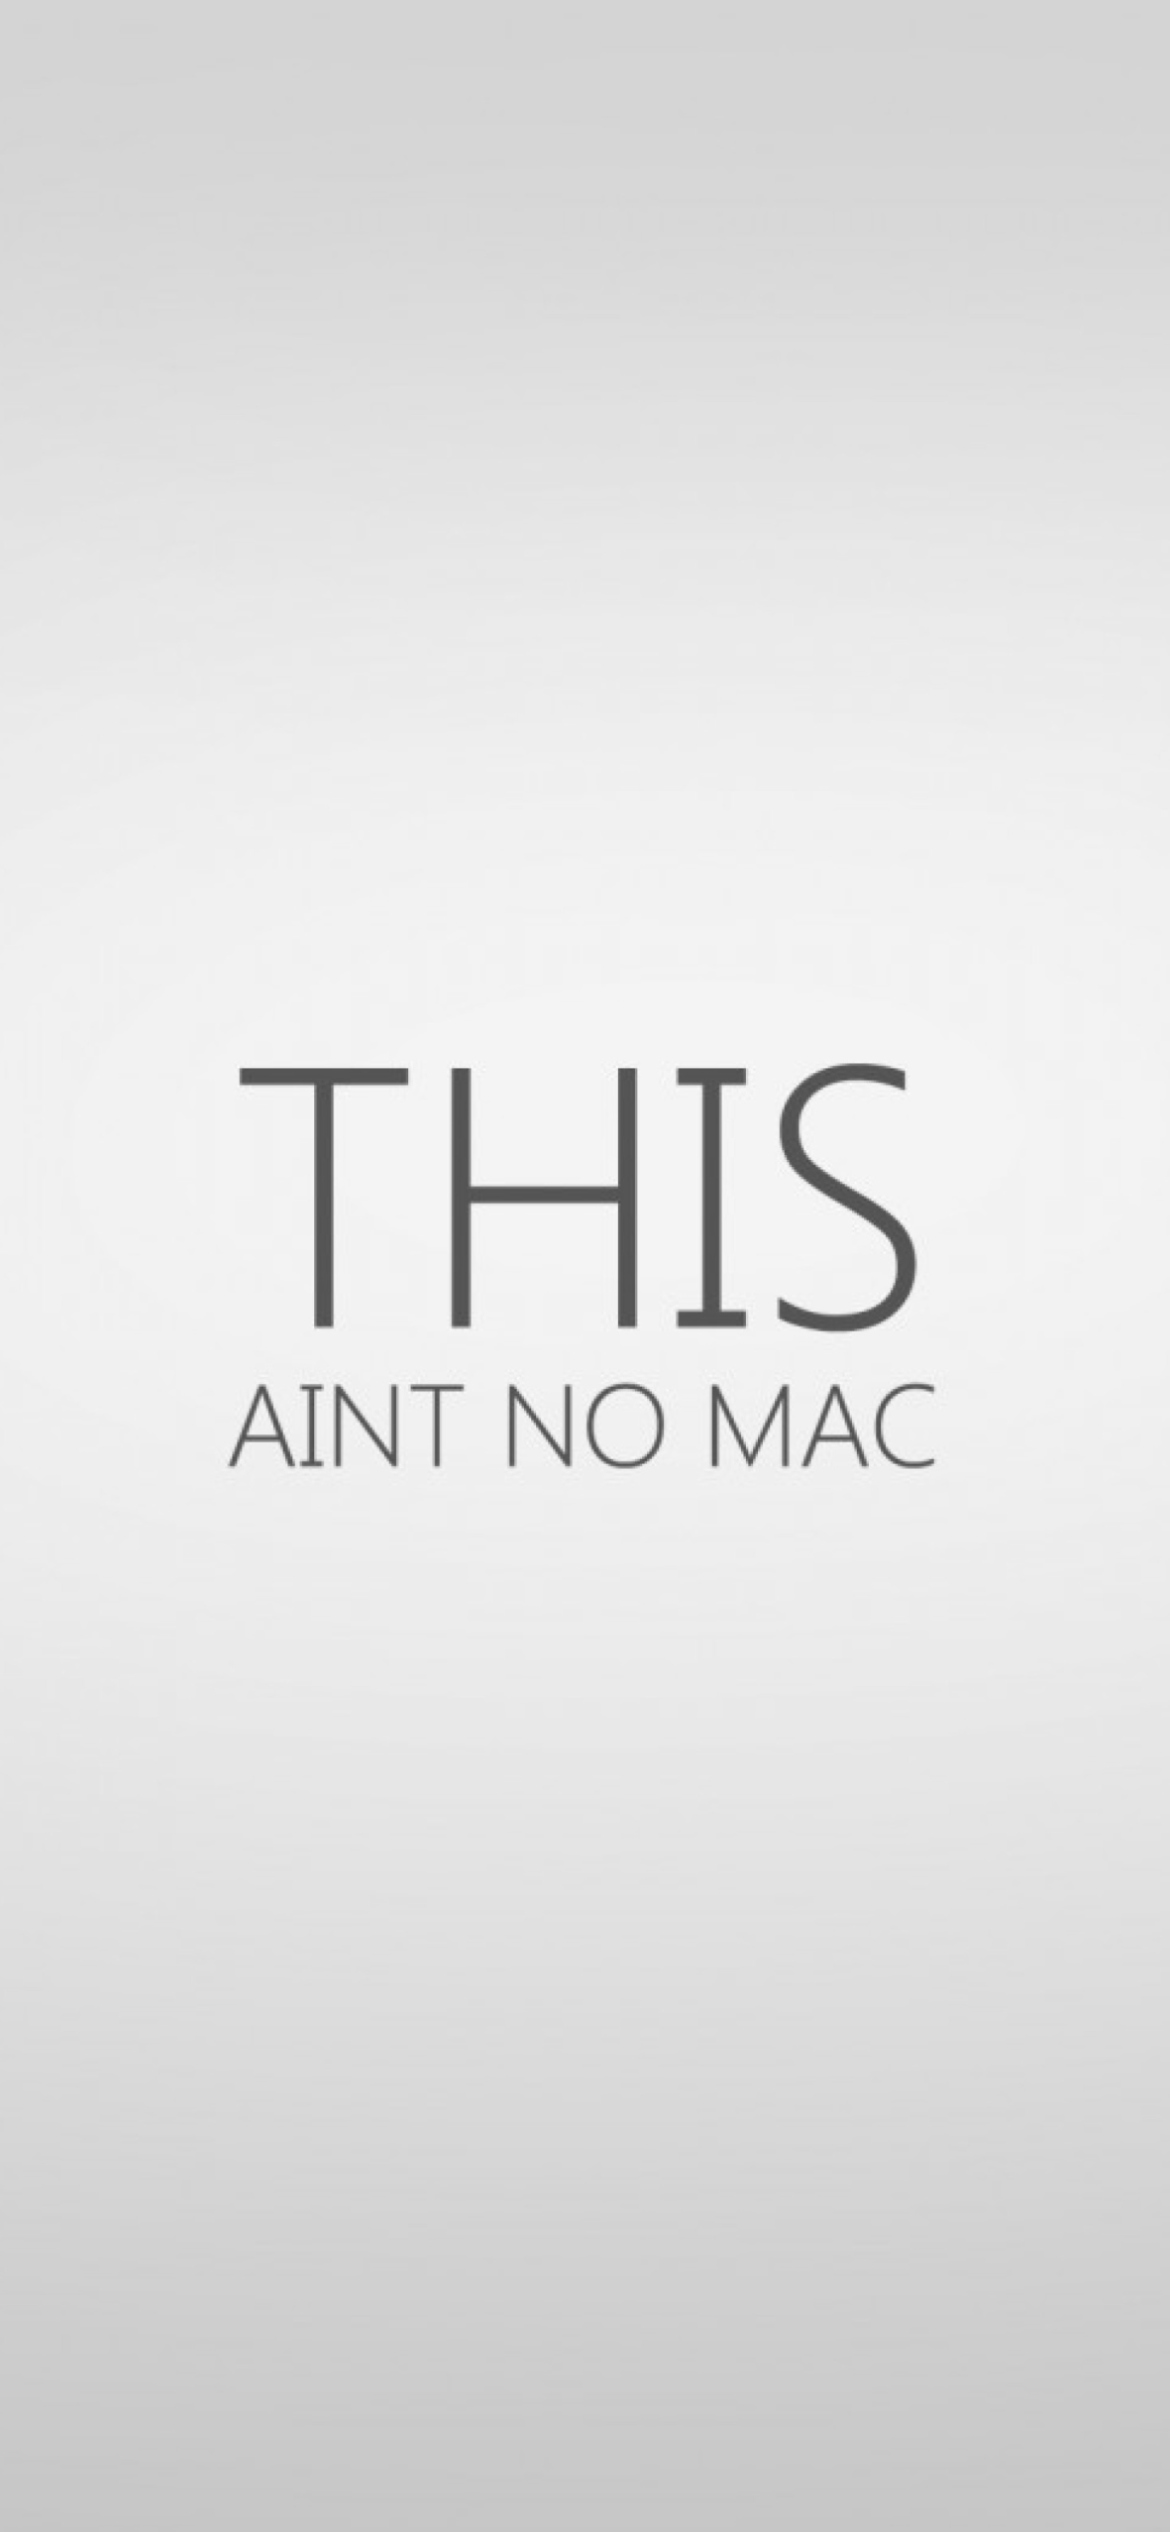 Das Ain't No Mac Wallpaper 1170x2532